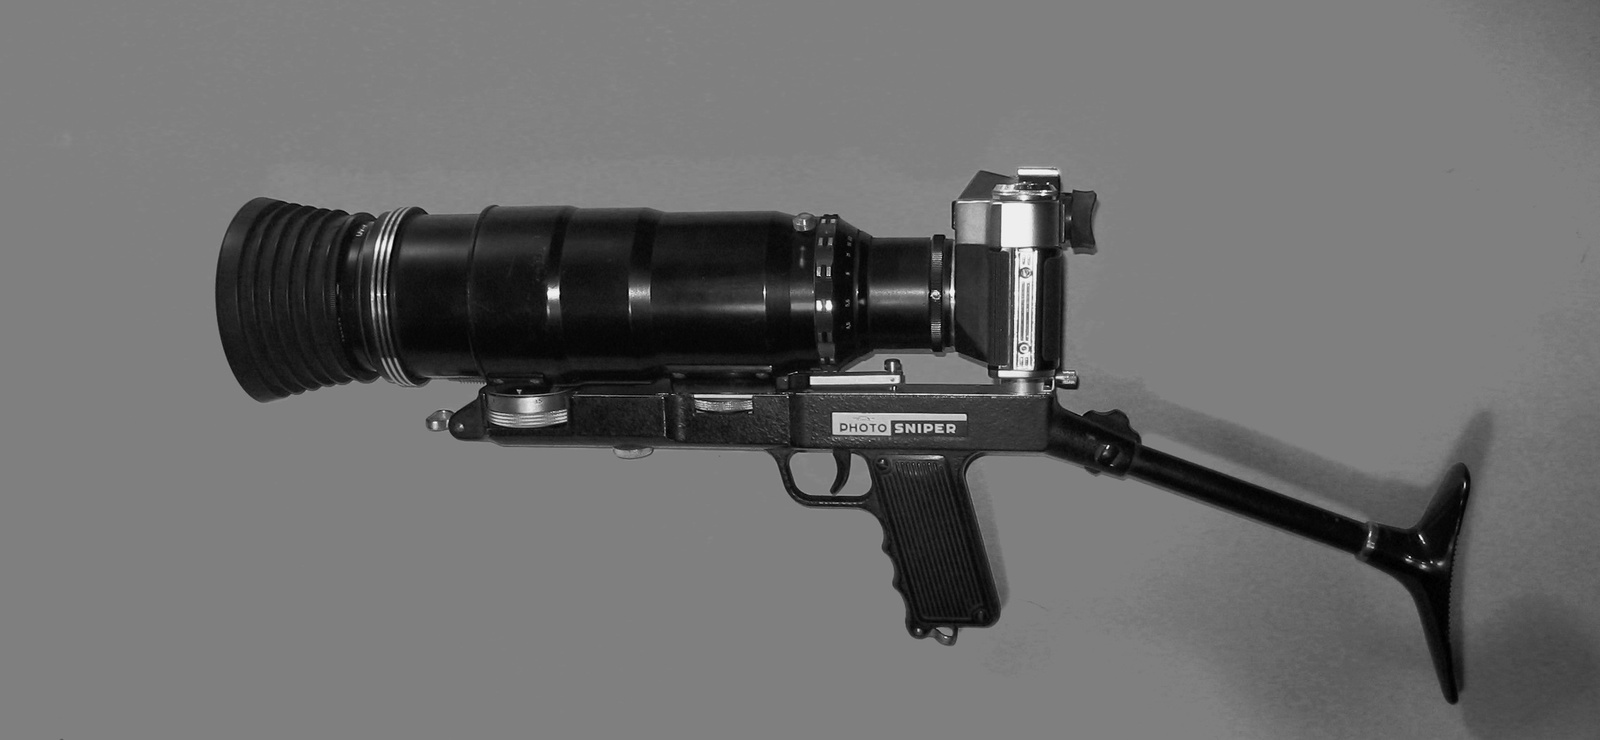 Photo Sniper (USSR fotó puska)